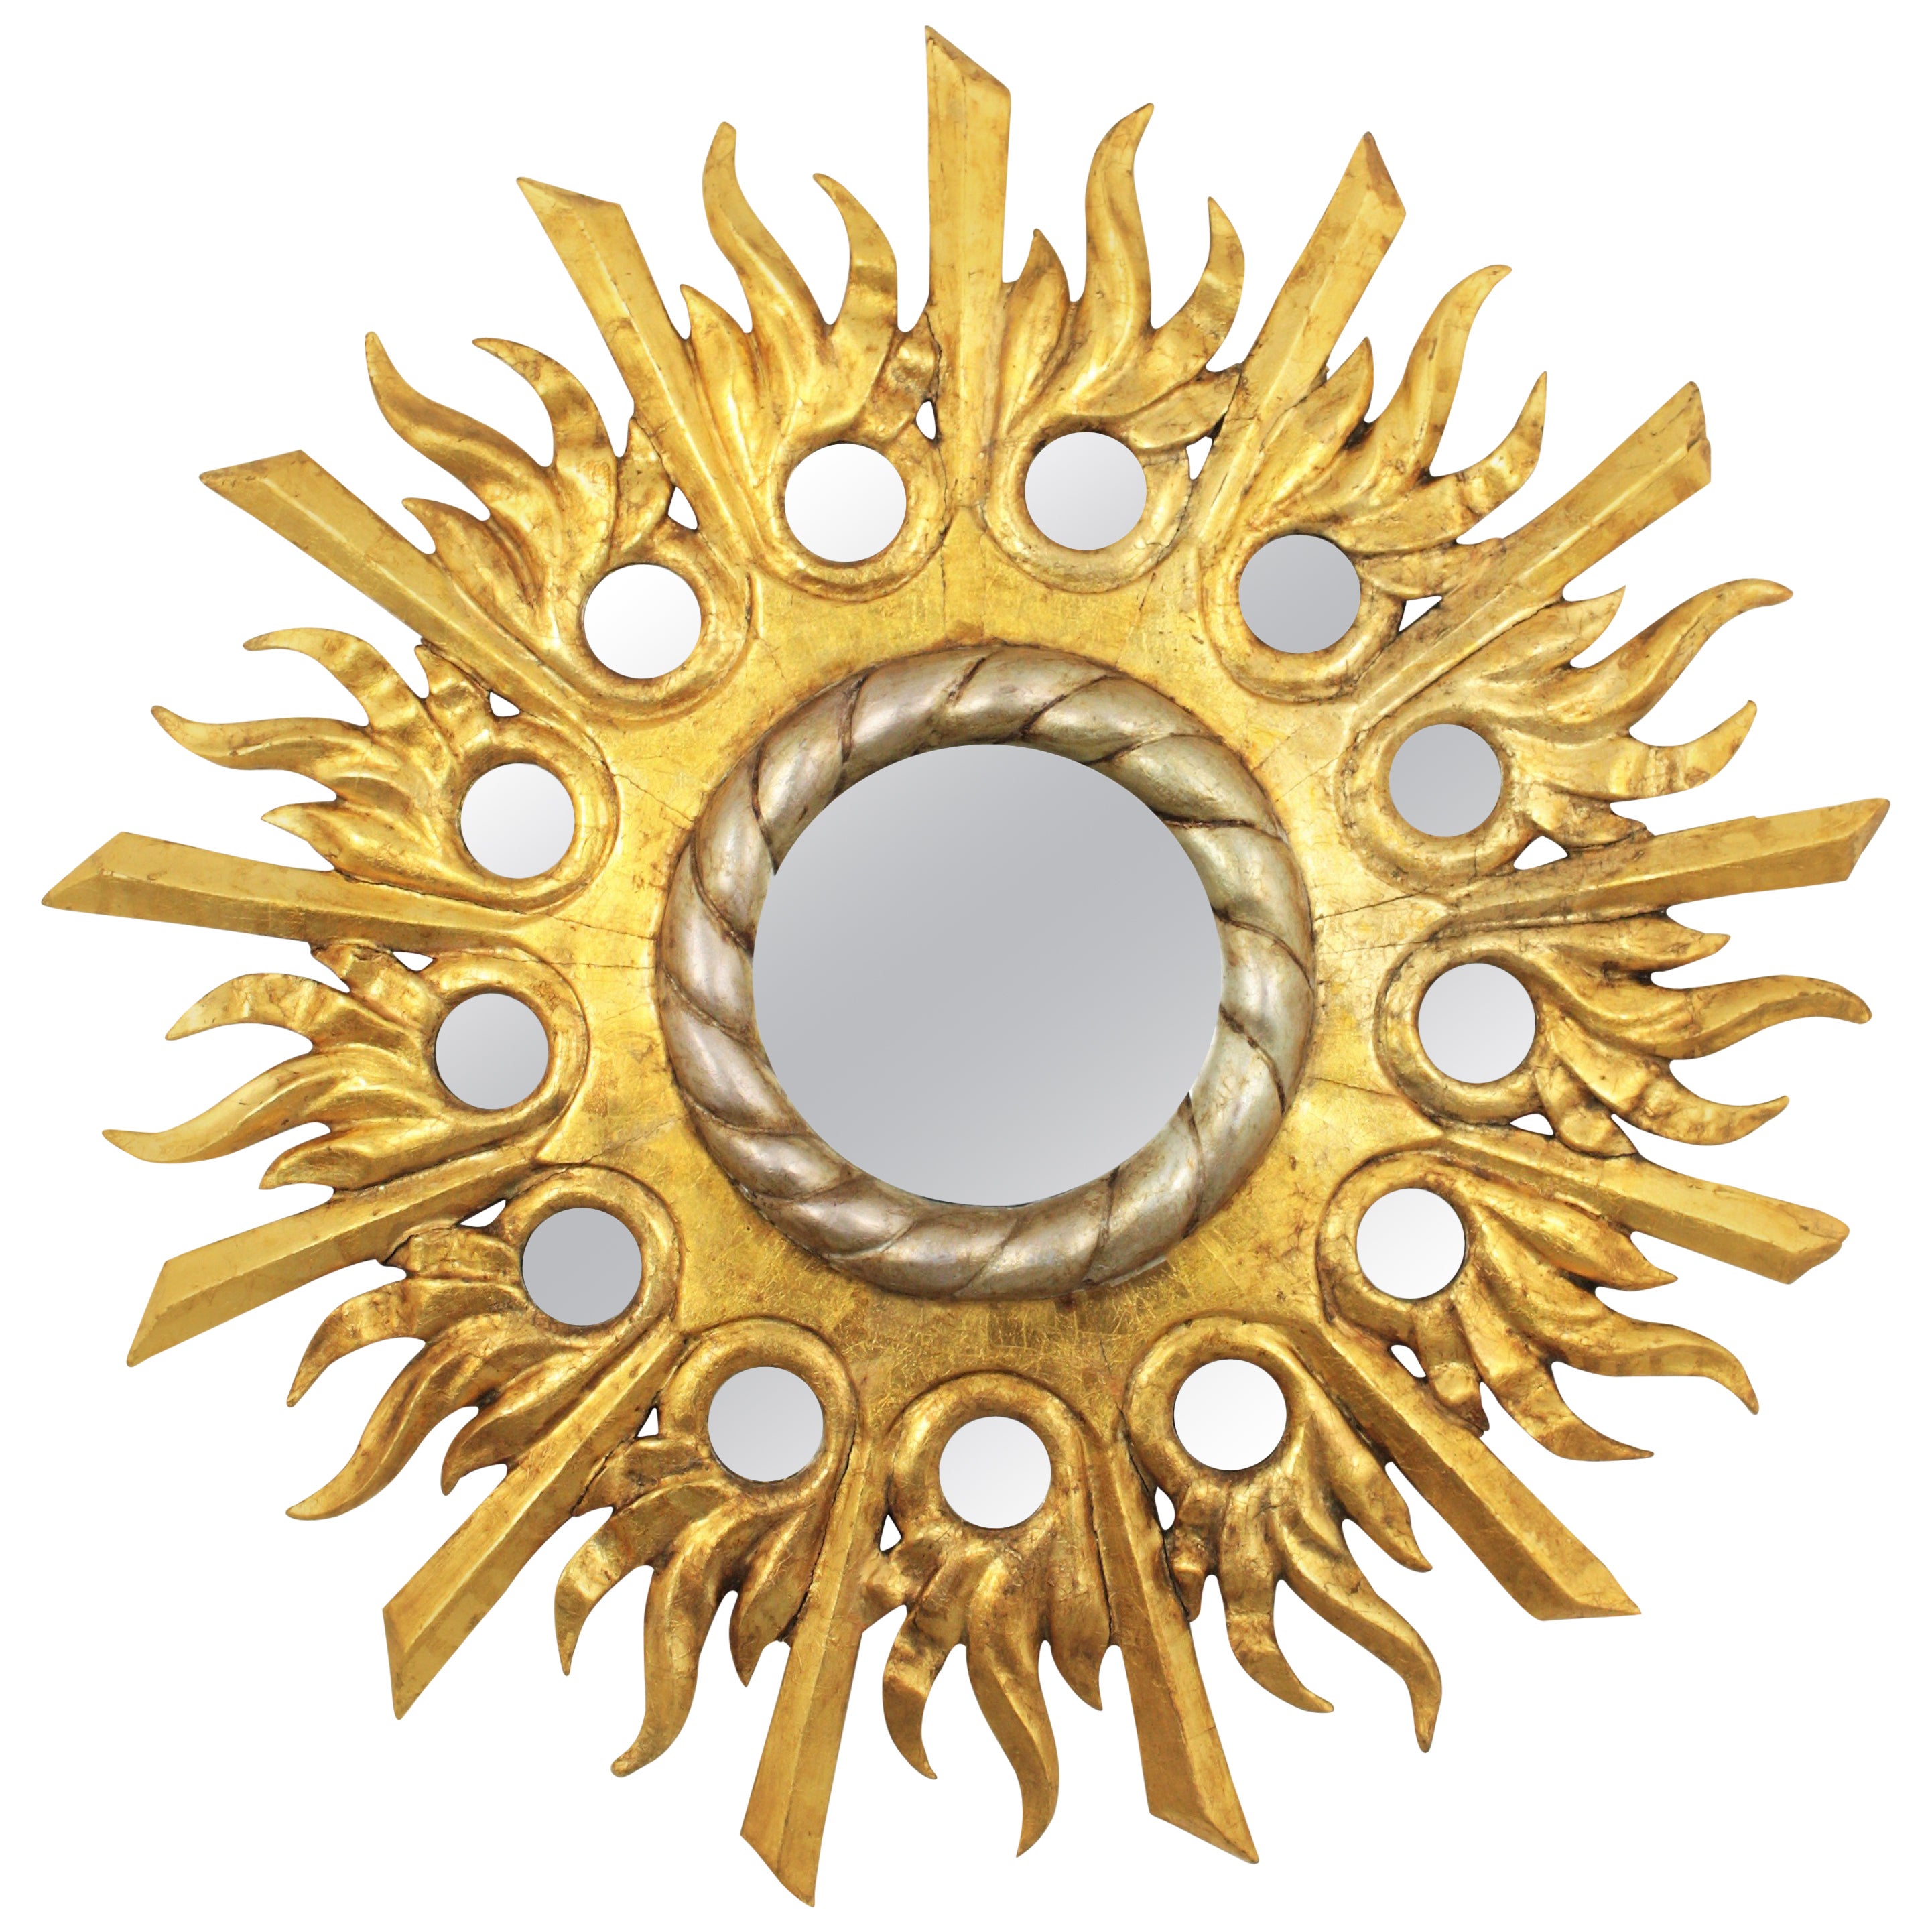 Gilt Silvered Sunburst Mirror in Carved Wood with Round Mirror Inlays